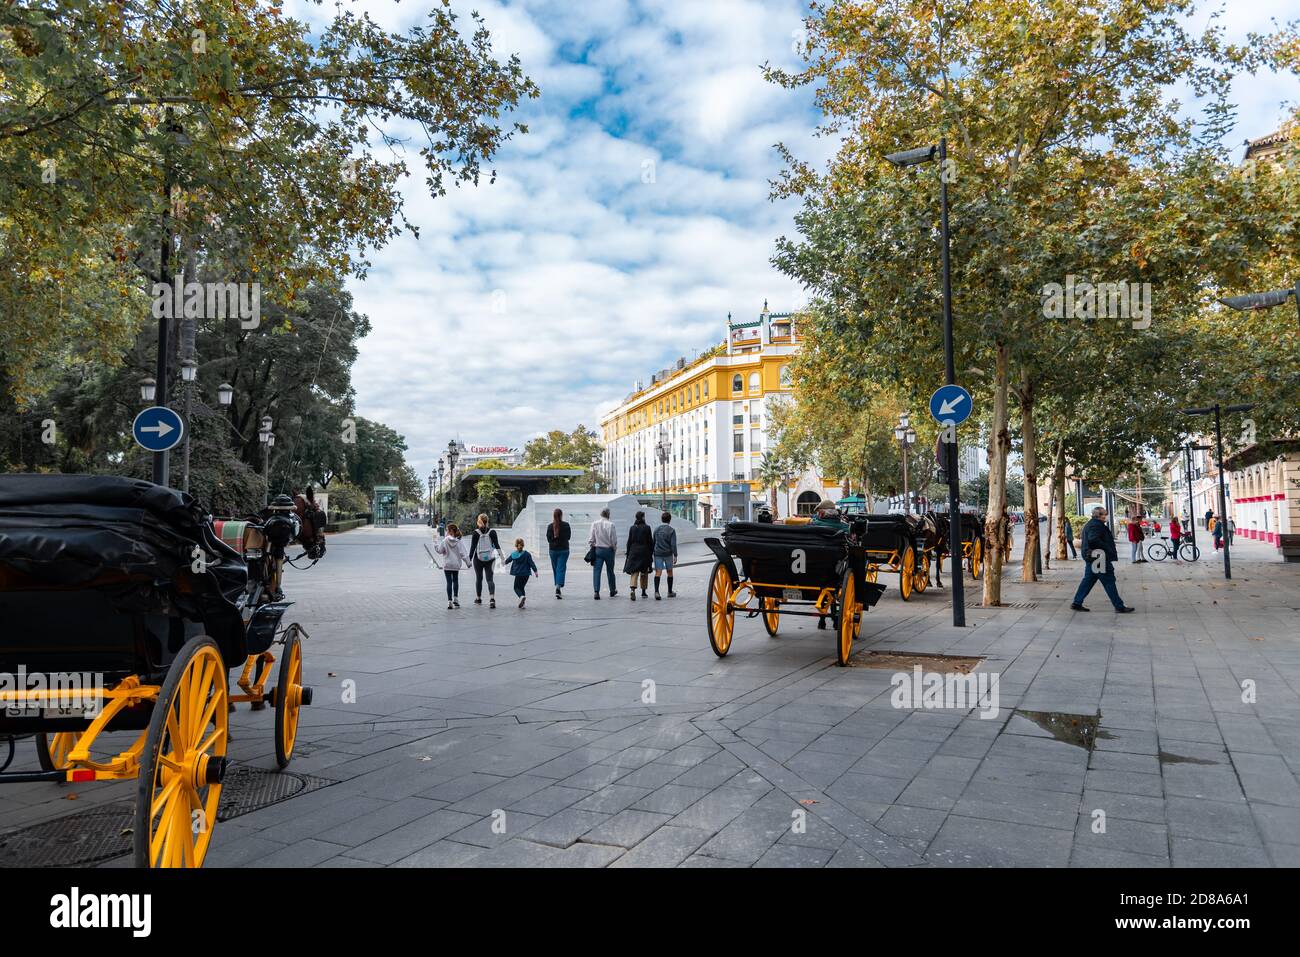 plaza de España Sevilla un lugar donde pasear en coche de caballo es un espectáculo Sevilla 2021 Stock Photo